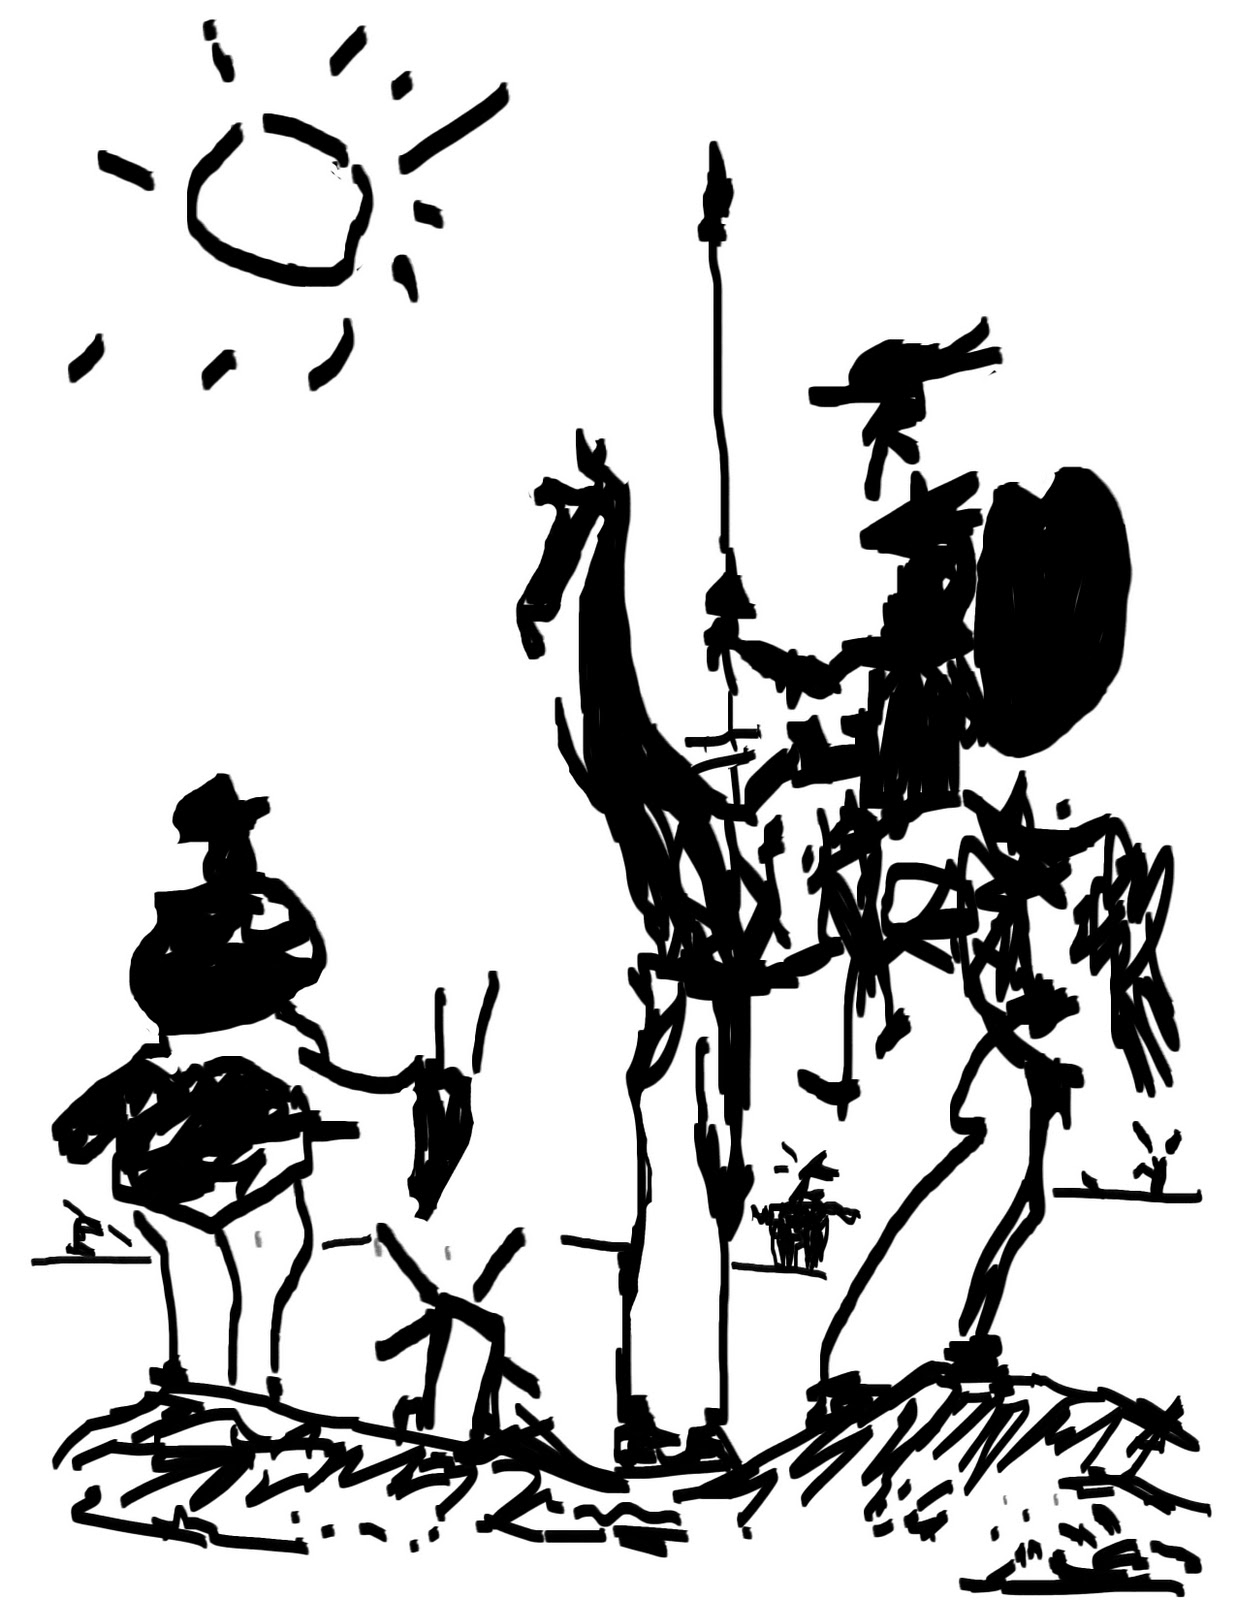 Spain--Don-Quixote-Spain-Classic-Novel.jpg